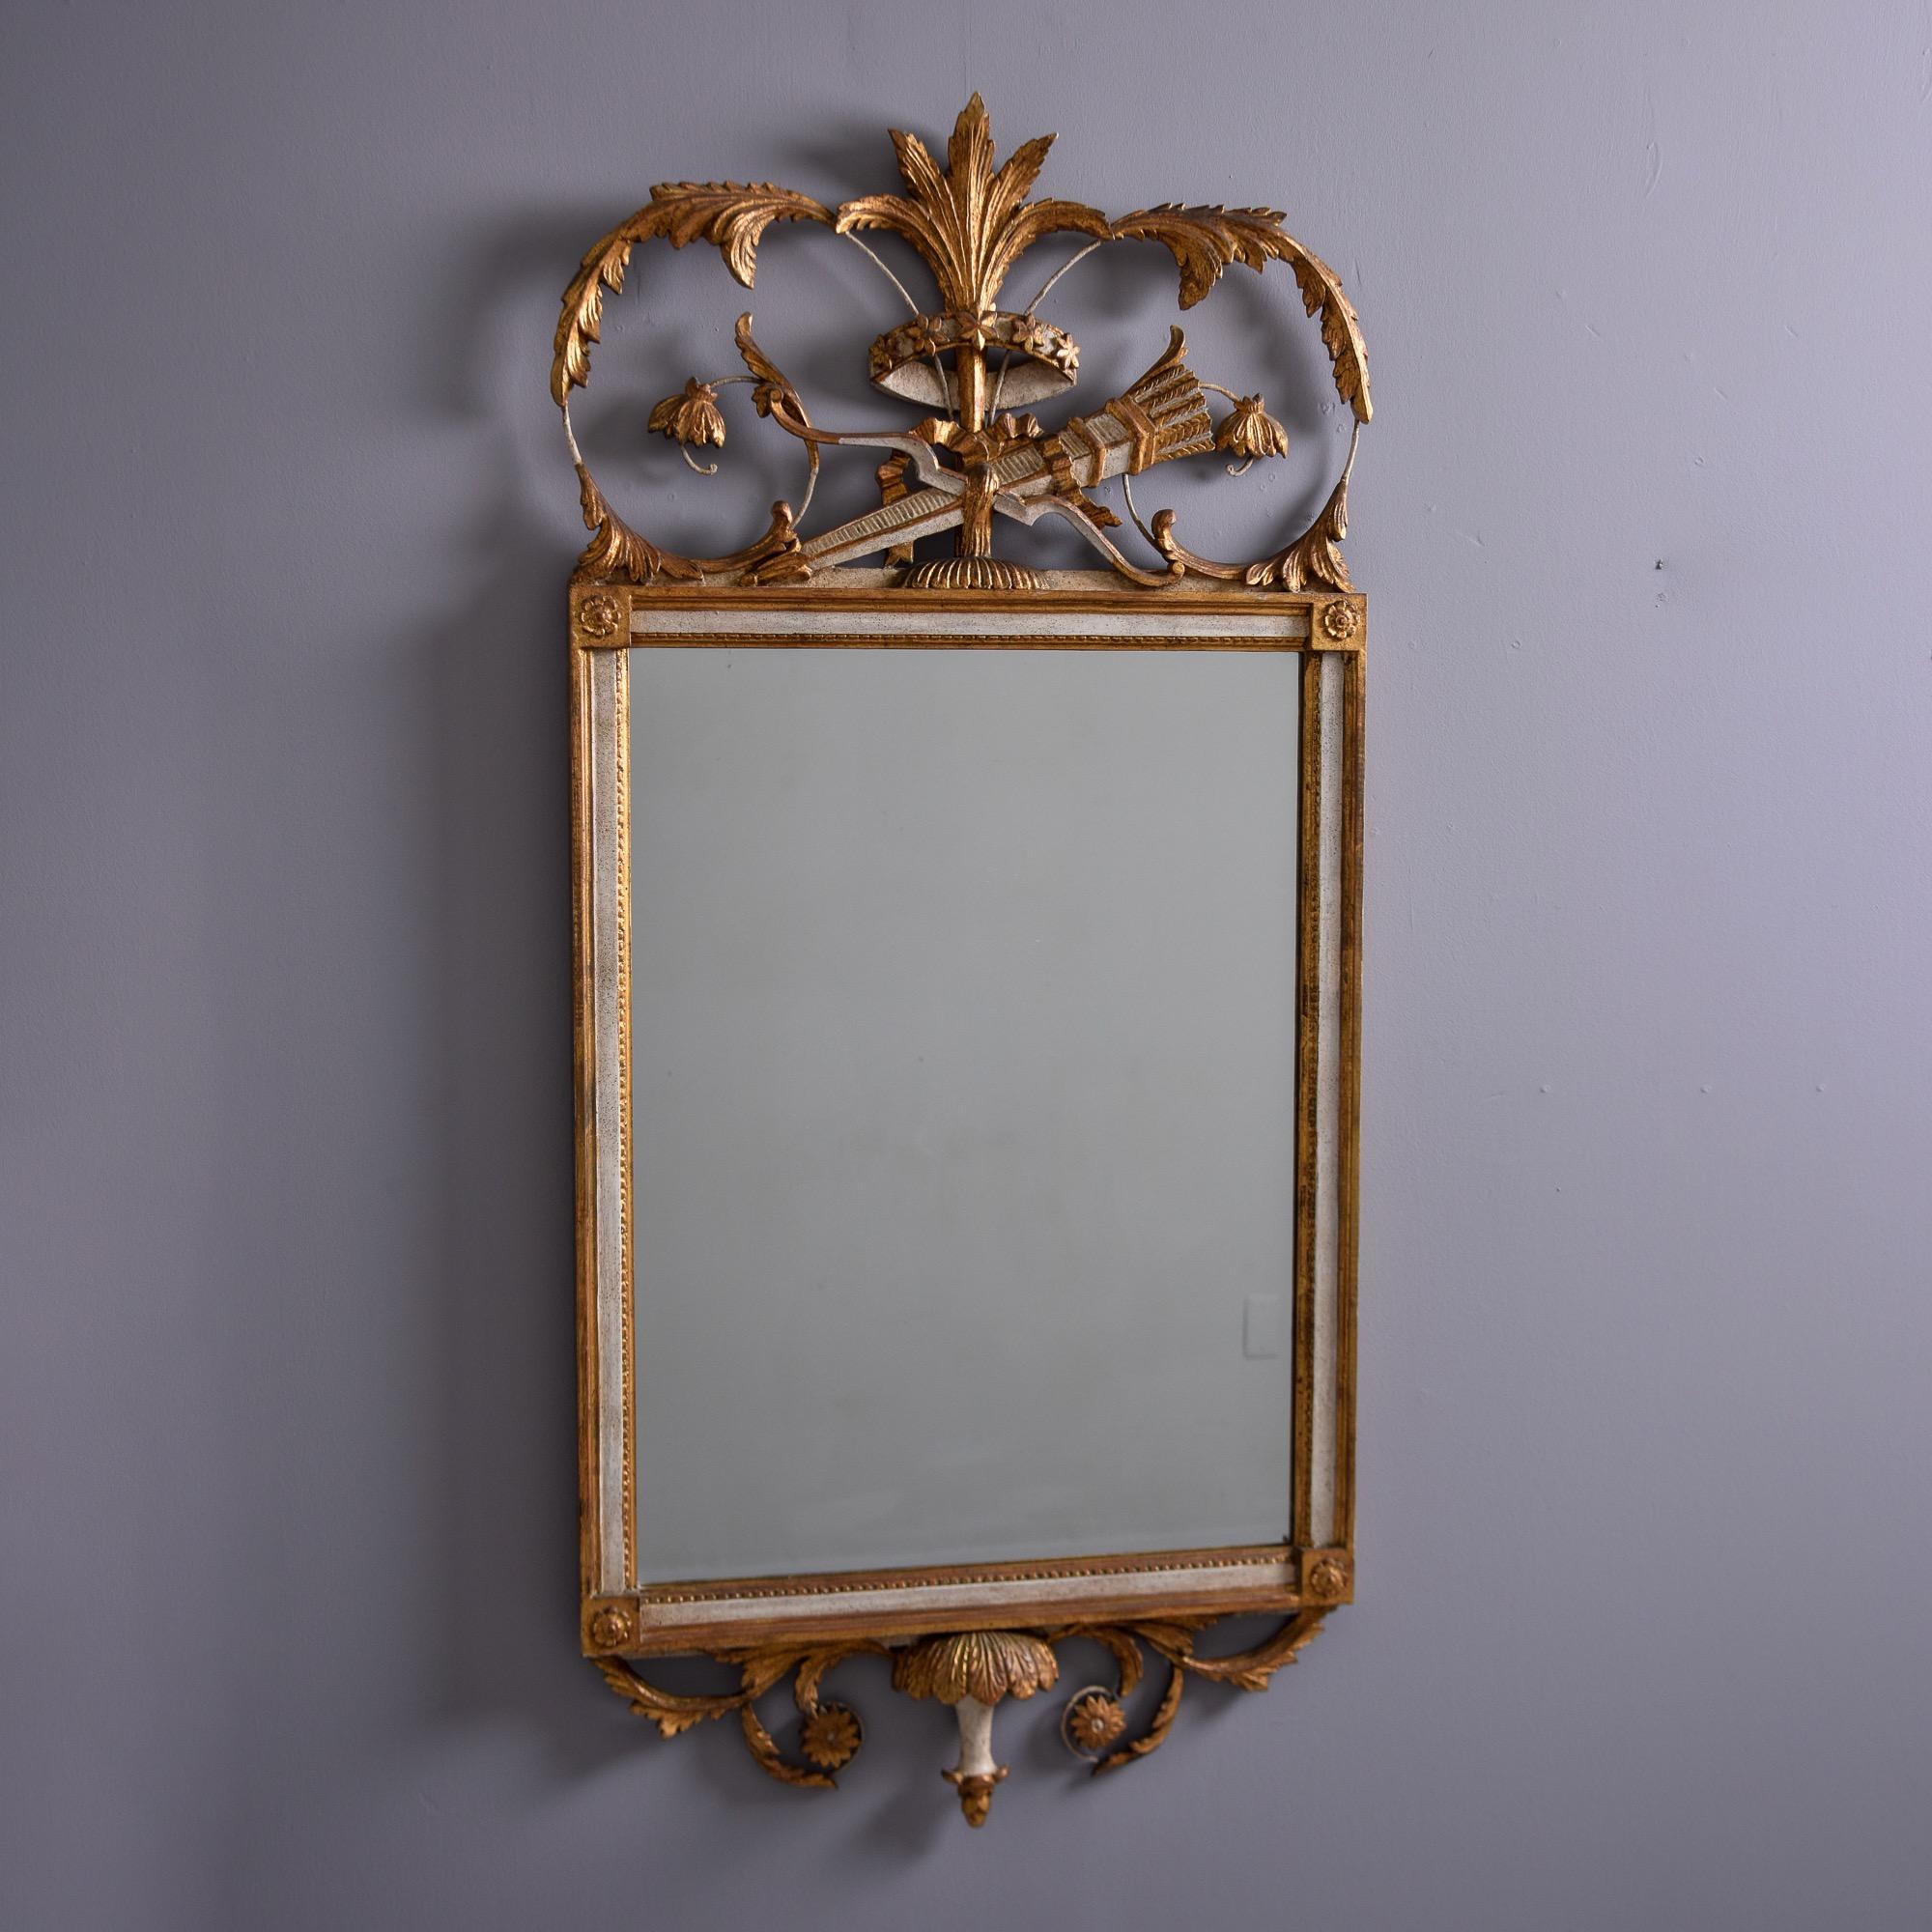 Trouvé aux États-Unis, ce miroir décoratif des années 1950 présente un cadre en bois doré et crème avec une crête ornée. Le miroir rectangulaire est orné d'un médaillon à motif floral dans chaque coin et d'une haute crête ajourée avec des feuilles